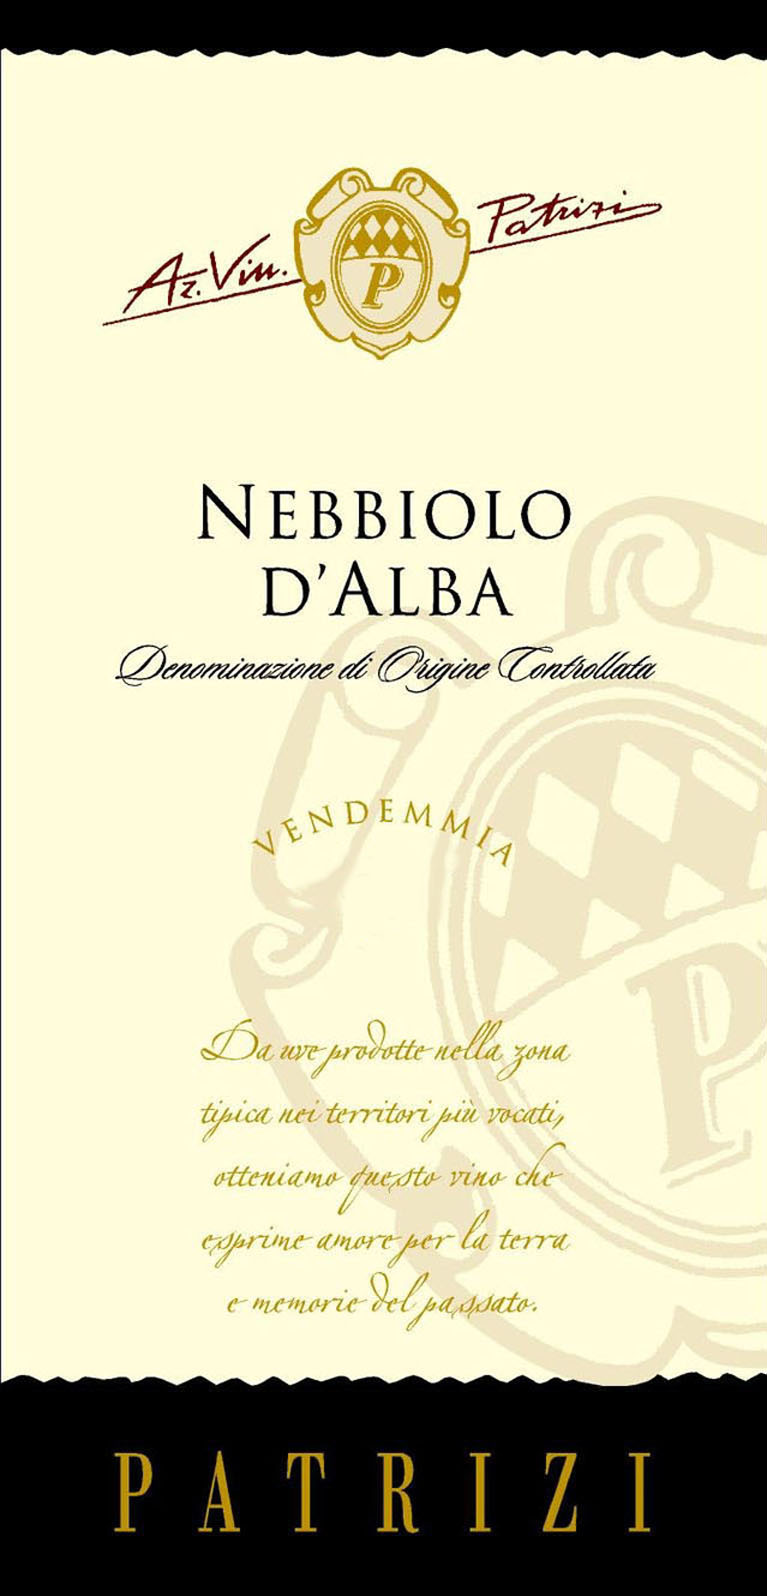 Patrizi - Nebbiolo D'Alba label